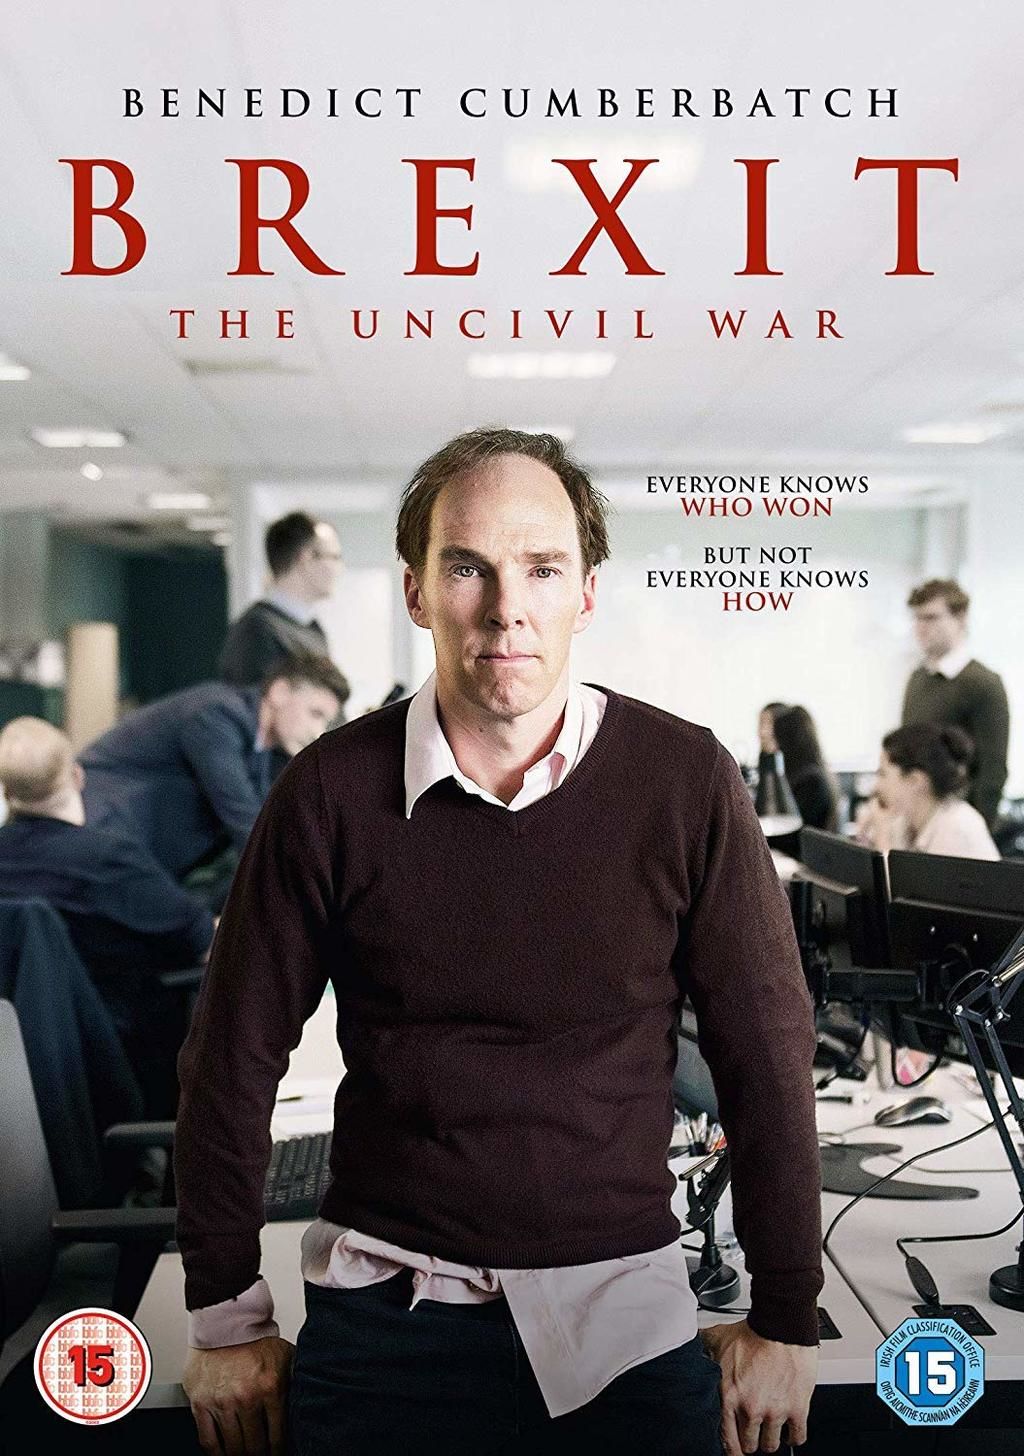 شاهد تريلر و مراجعة فيلم Brexit: The Uncivil War انسحاب المملكة المتحدة عن الإتحاد الأوروبي الحرب اللاأهلية بينيديكت كامبرباتش 